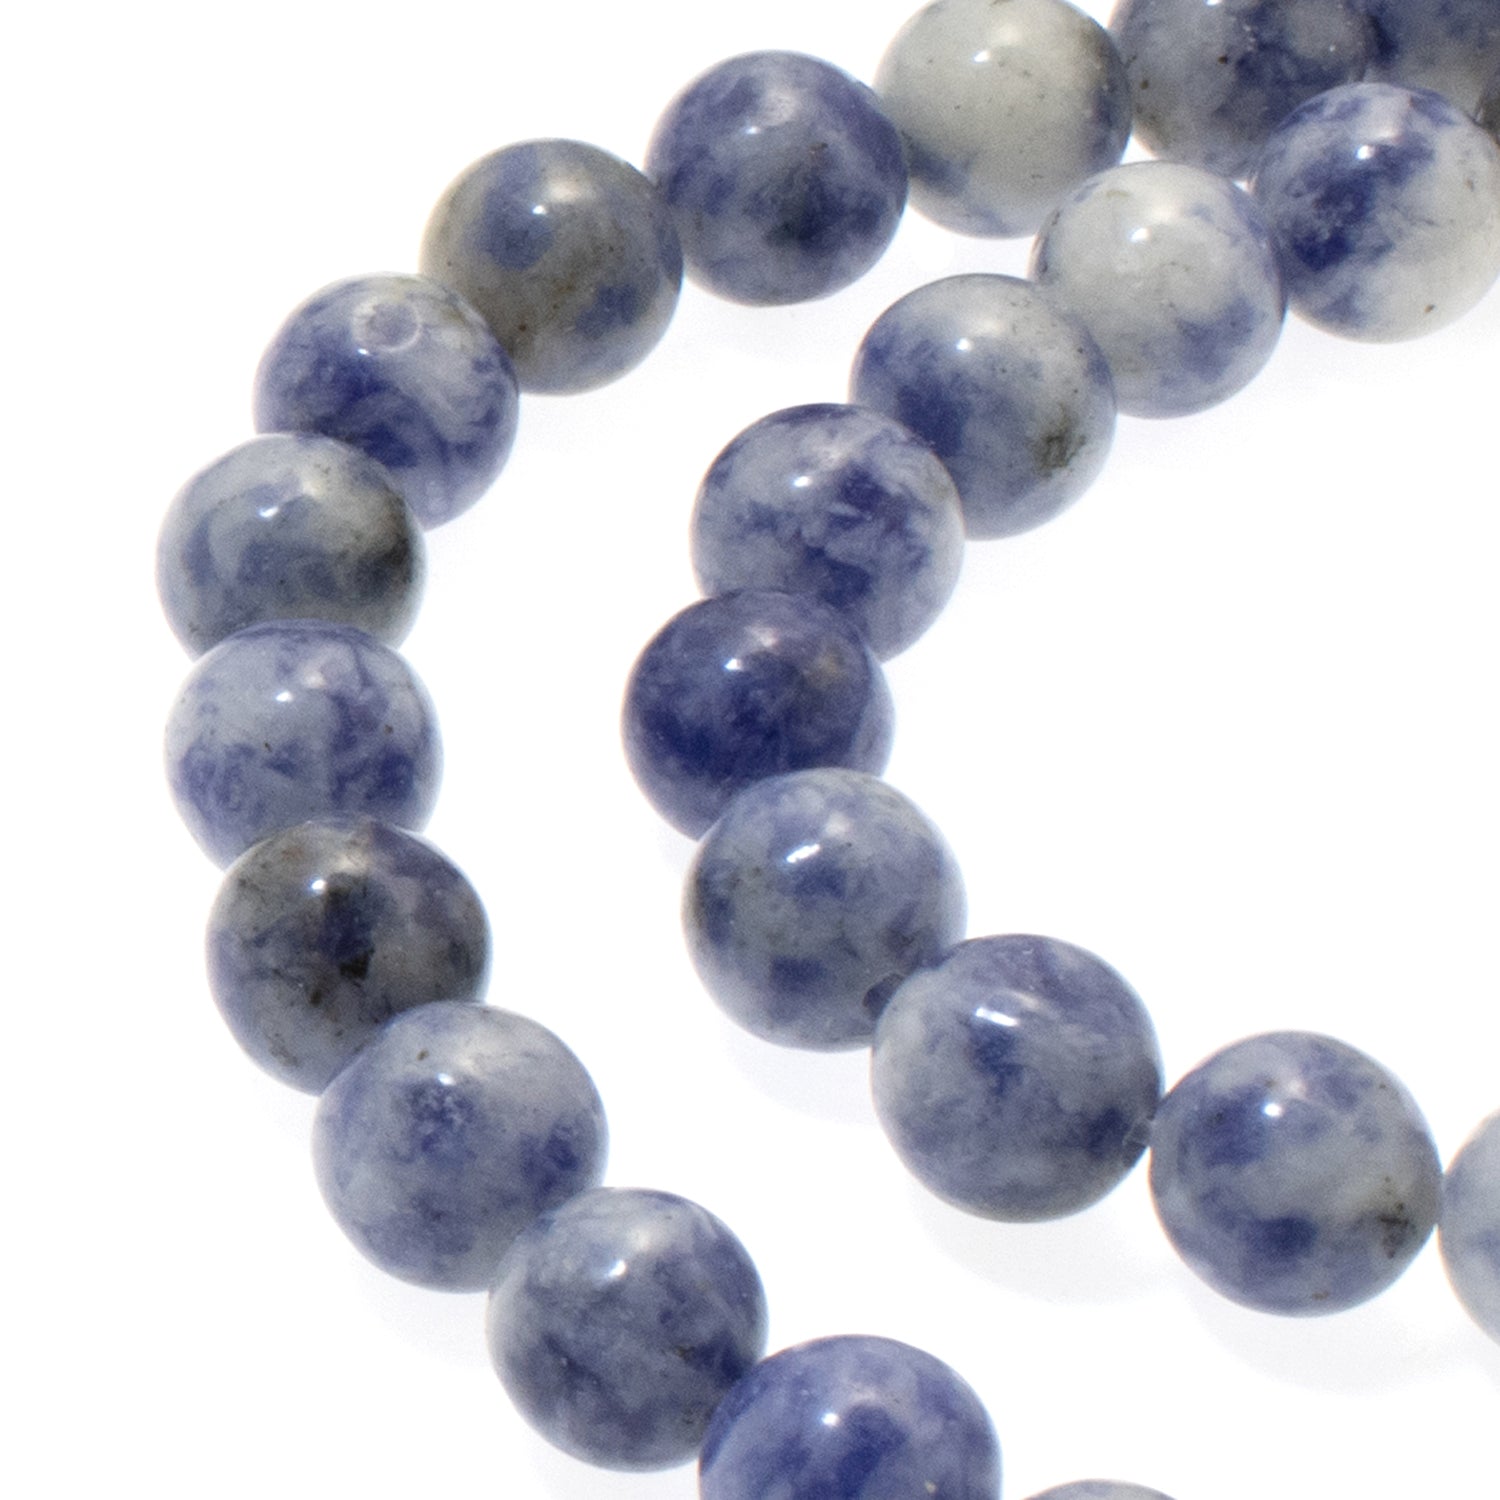 8mm Blue Green Druzy Agate Beads | Hackberry Creek